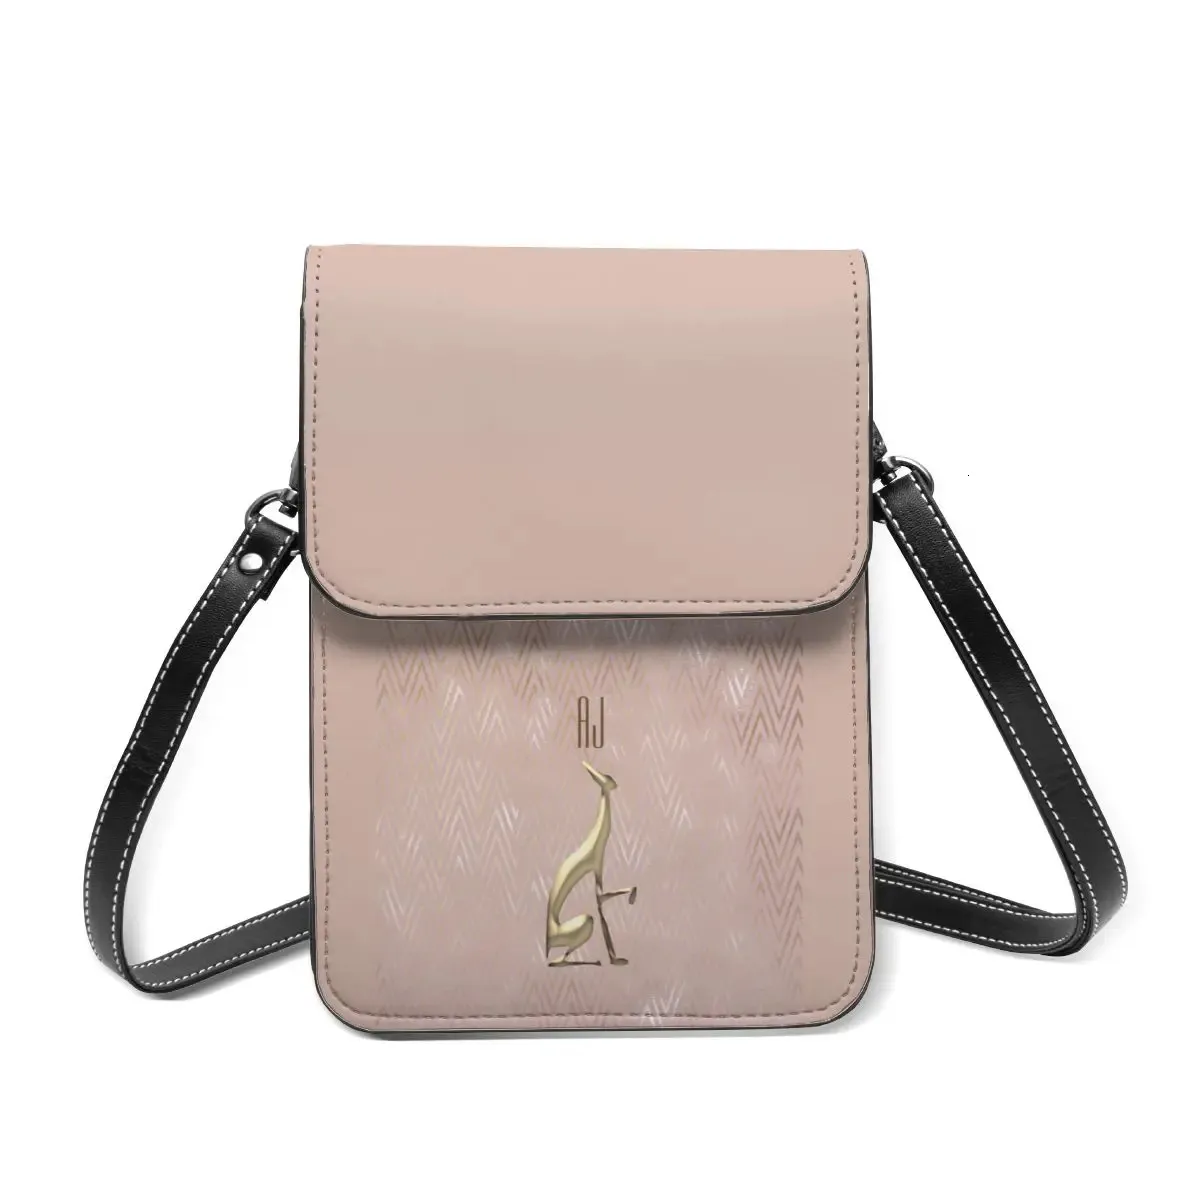 Сумка через плечо Greyhound, объемная ретро-сумка для мобильного телефона, кожаные сумки для покупок, студенческие сумки 240304